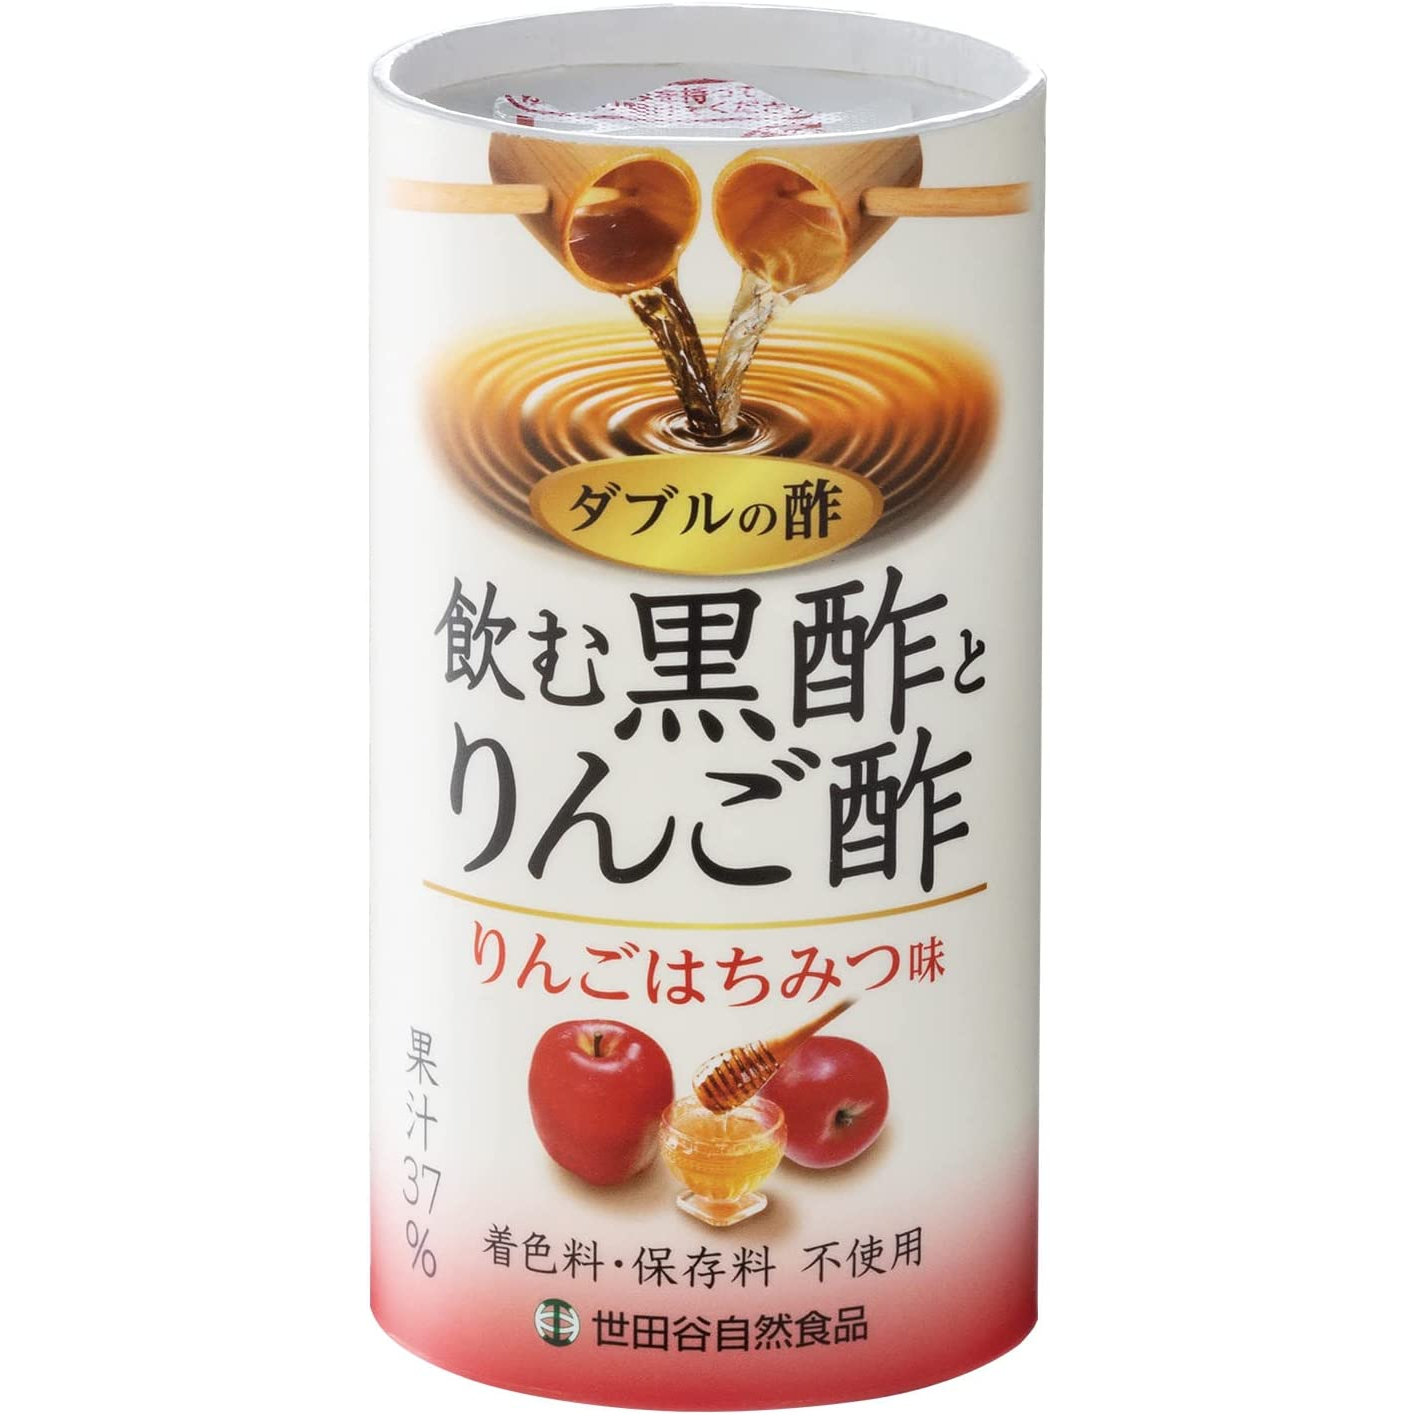 雙醋 飲用黑醋和蘋果醋125ml 醋飲 紙容器 蘋果蜂蜜味 日本國產 蘋果汁 無色素或防腐劑 飲用醋 醋汁 健康氨基酸